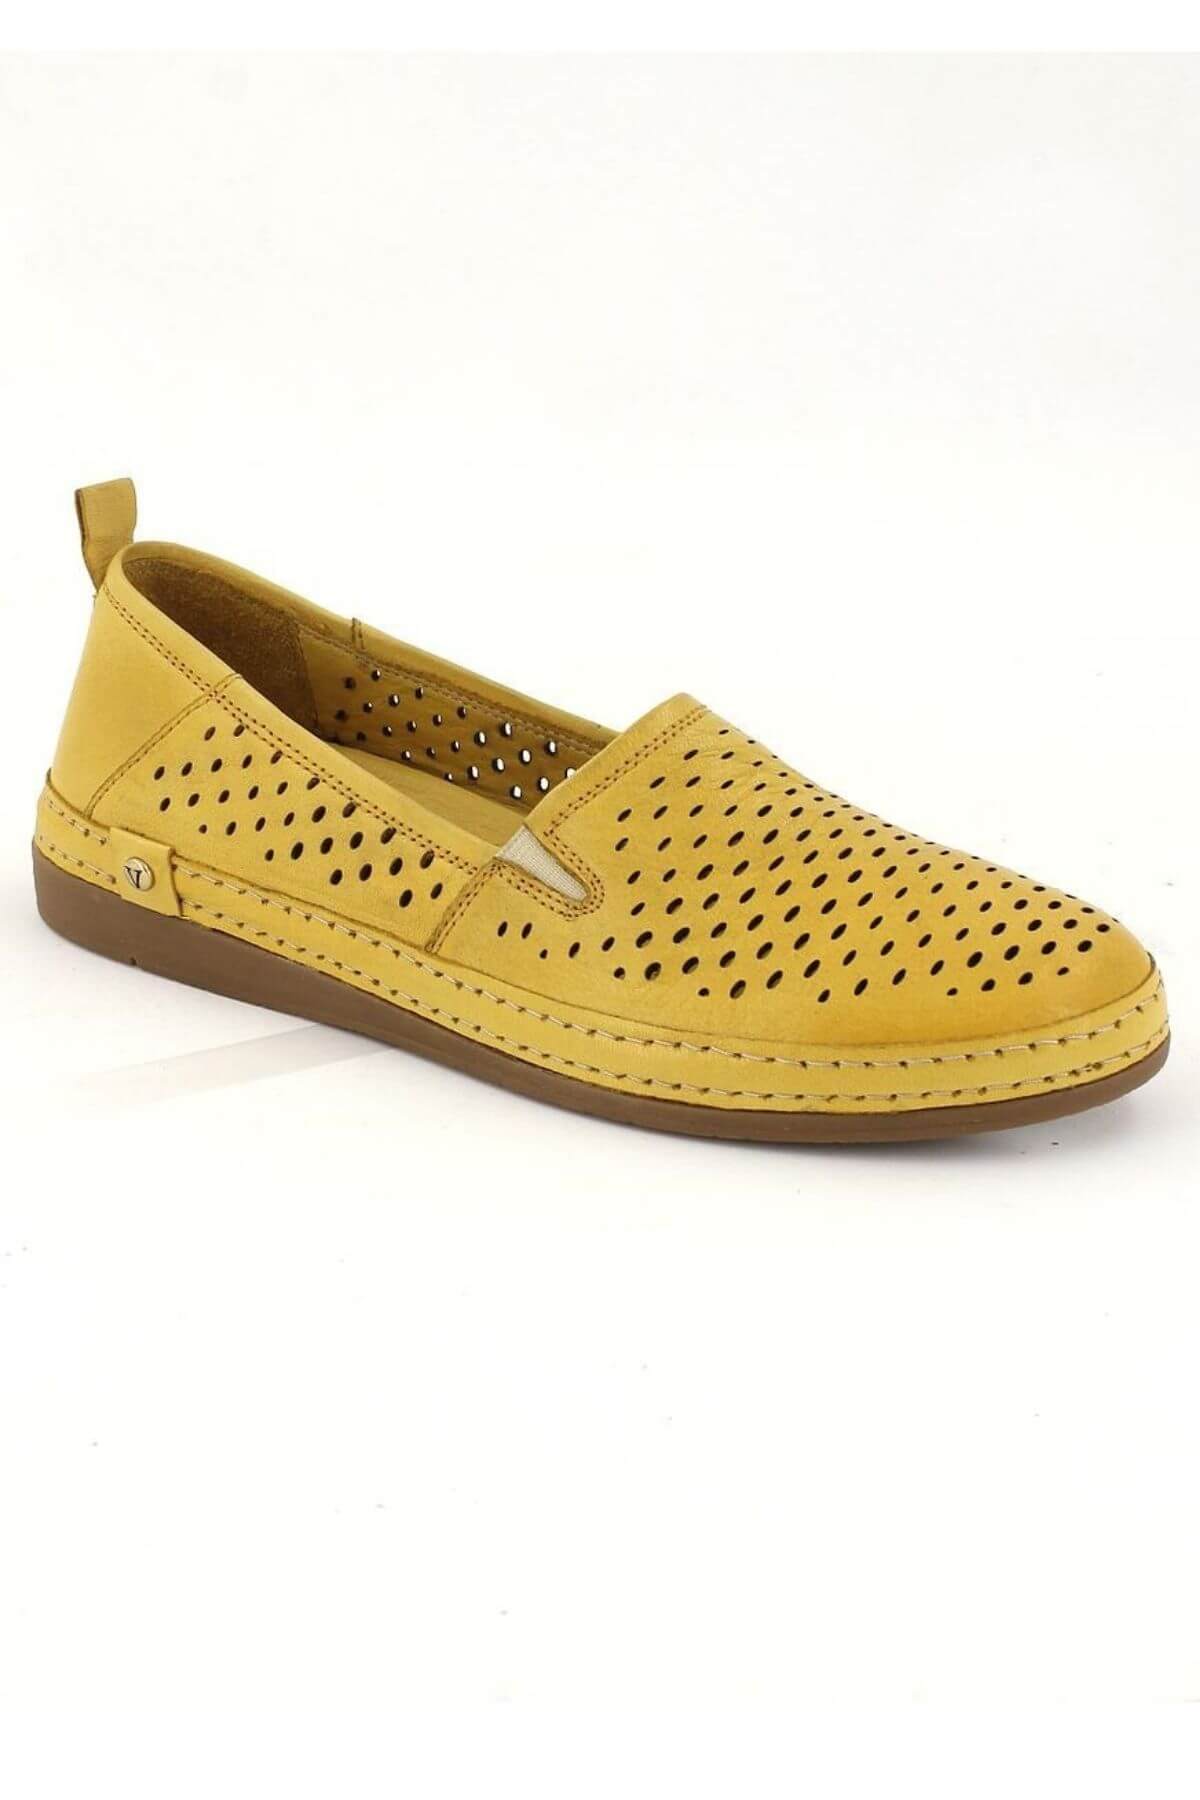 Kadın Yazlık Comfort Deri Ayakkabı Sarı 2211201Y - Thumbnail